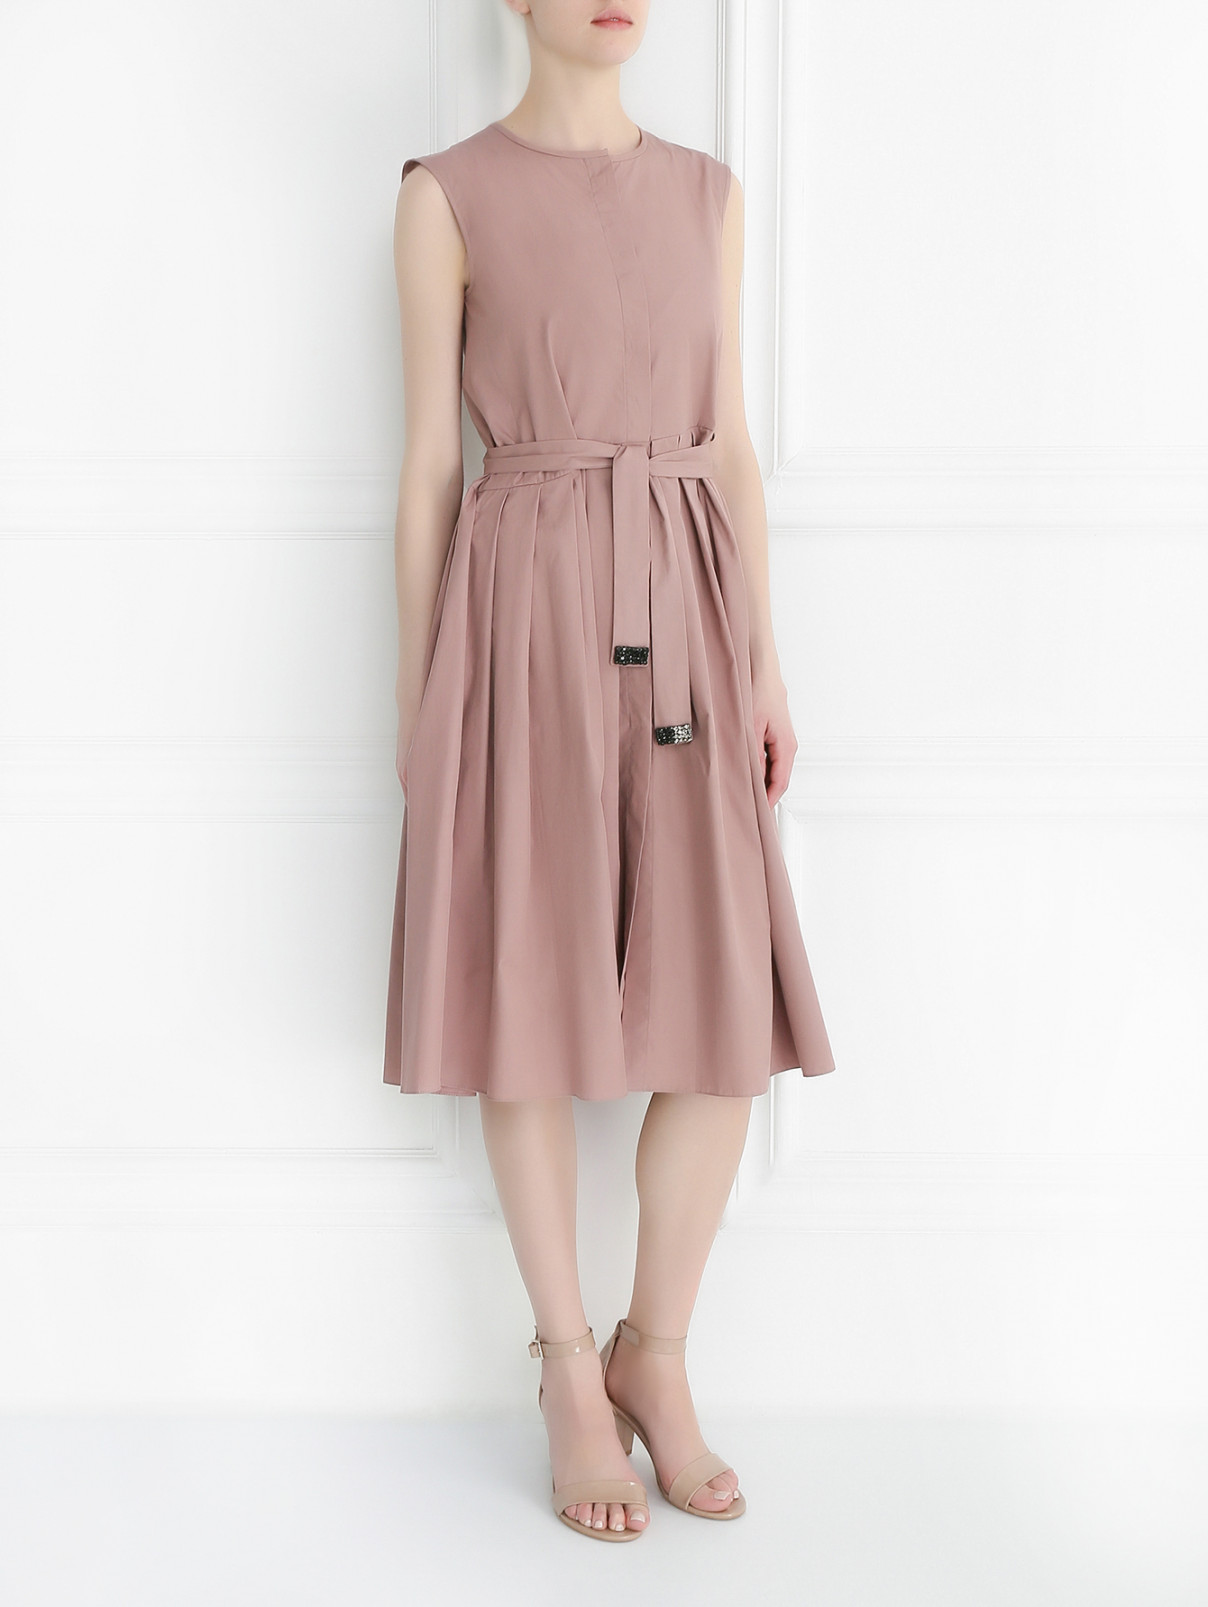 Платье из хлопка без рукавов S Max Mara  –  Модель Общий вид  – Цвет:  Розовый